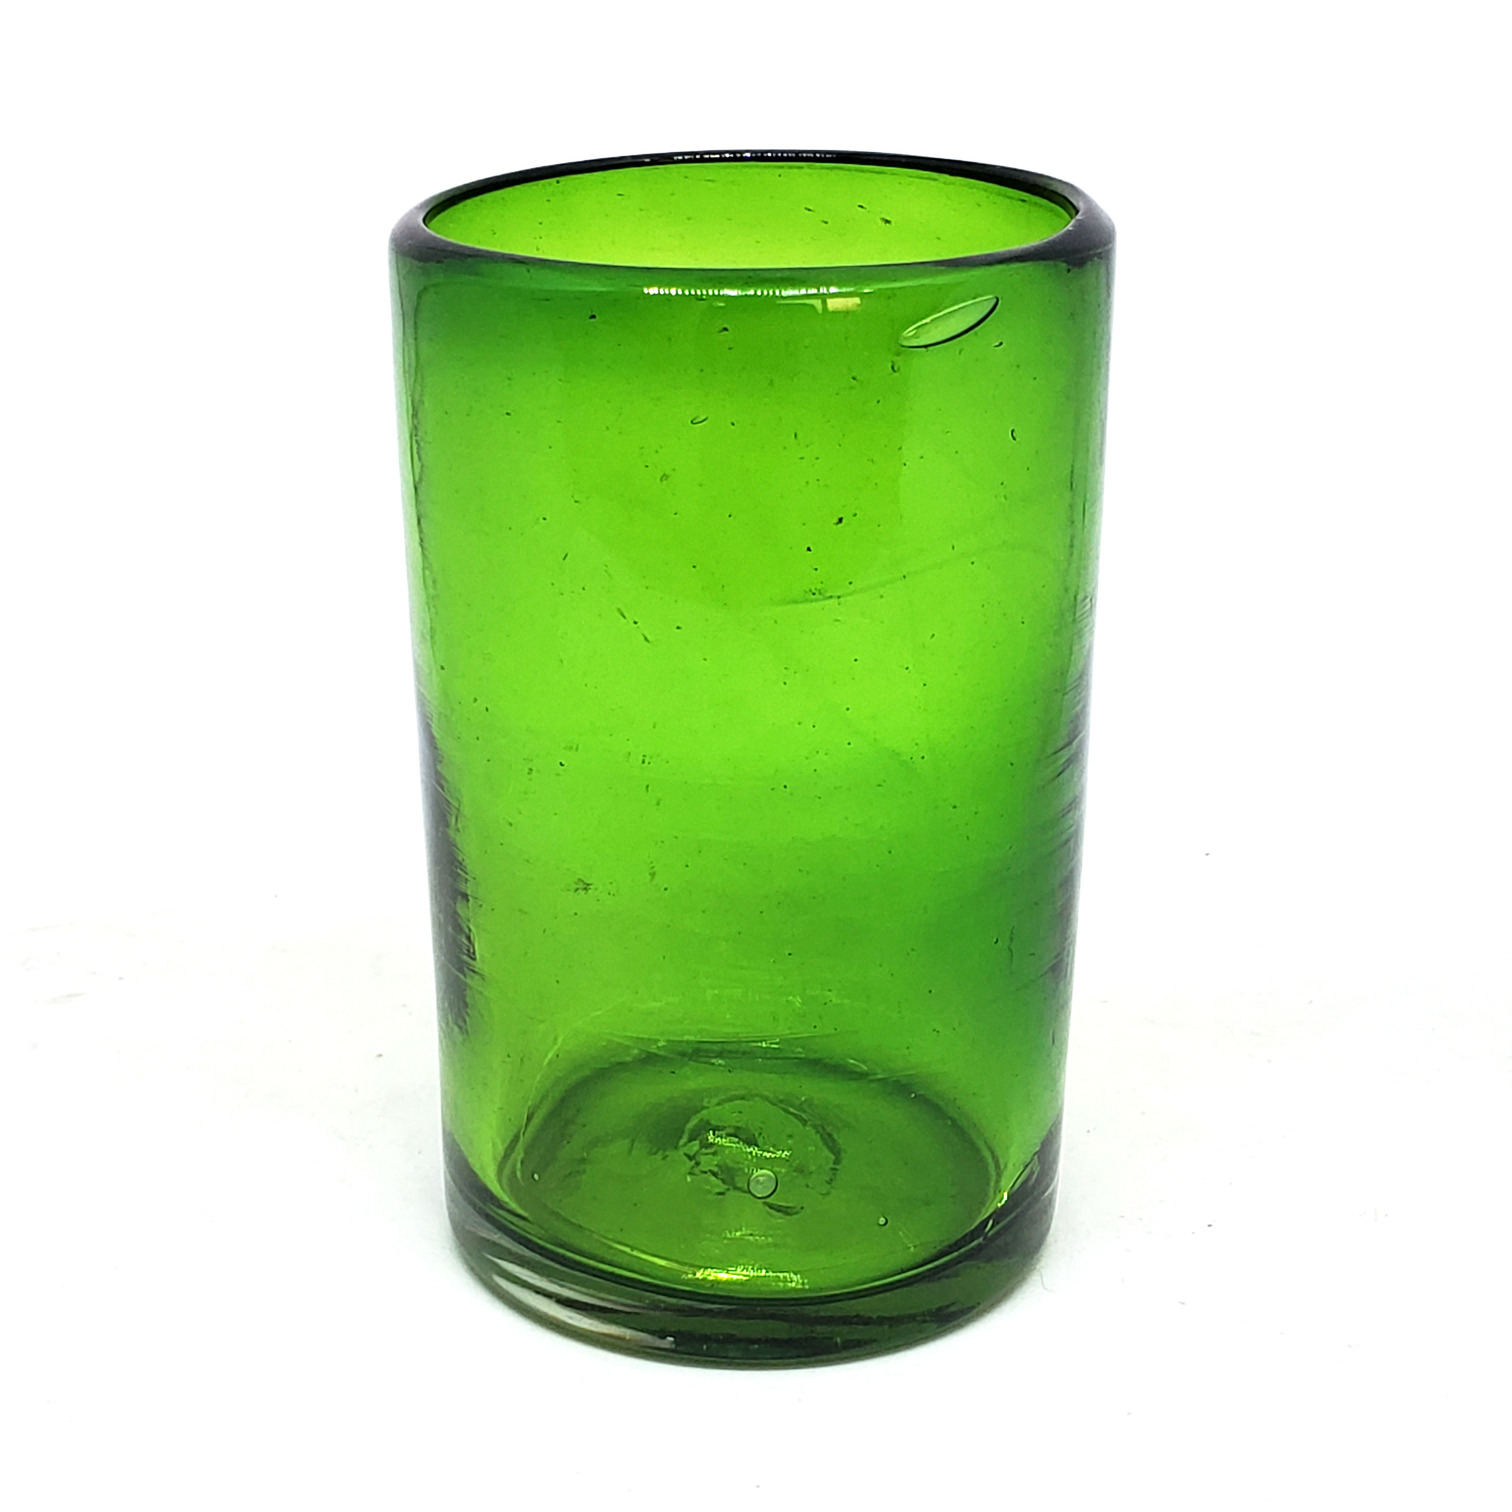 Novedades / Juego de 6 vasos grandes color verde esmeralda / Éstos artesanales vasos le darán un toque clásico a su bebida favorita.